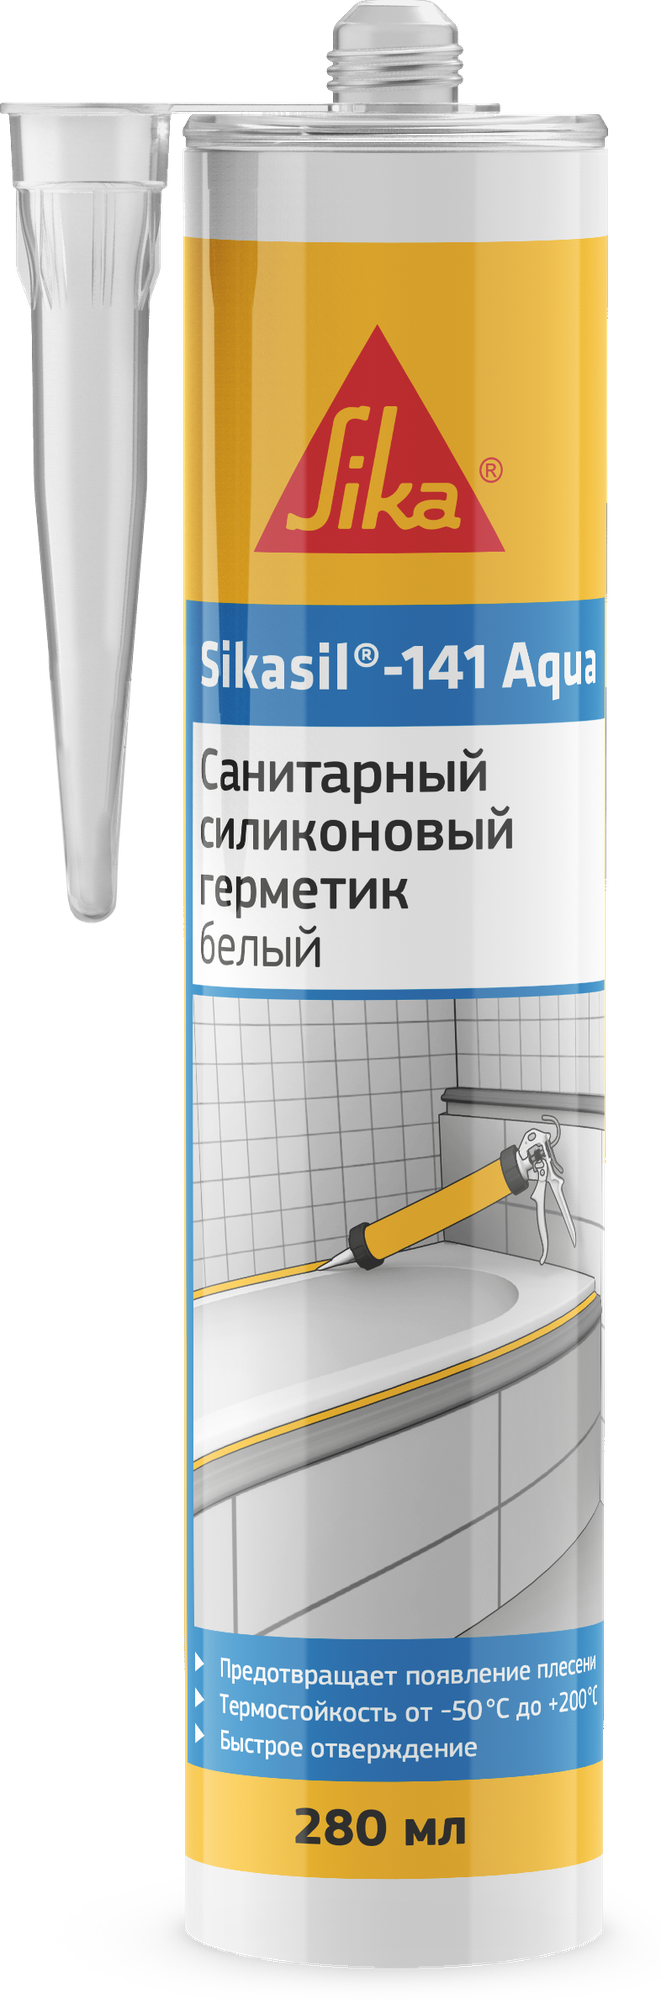 Силиконовый противогрибковый клей-герметик для кухни, ванной и душевой комнаты Sikasil - 141 Aqua, 280 мл цвет Белый